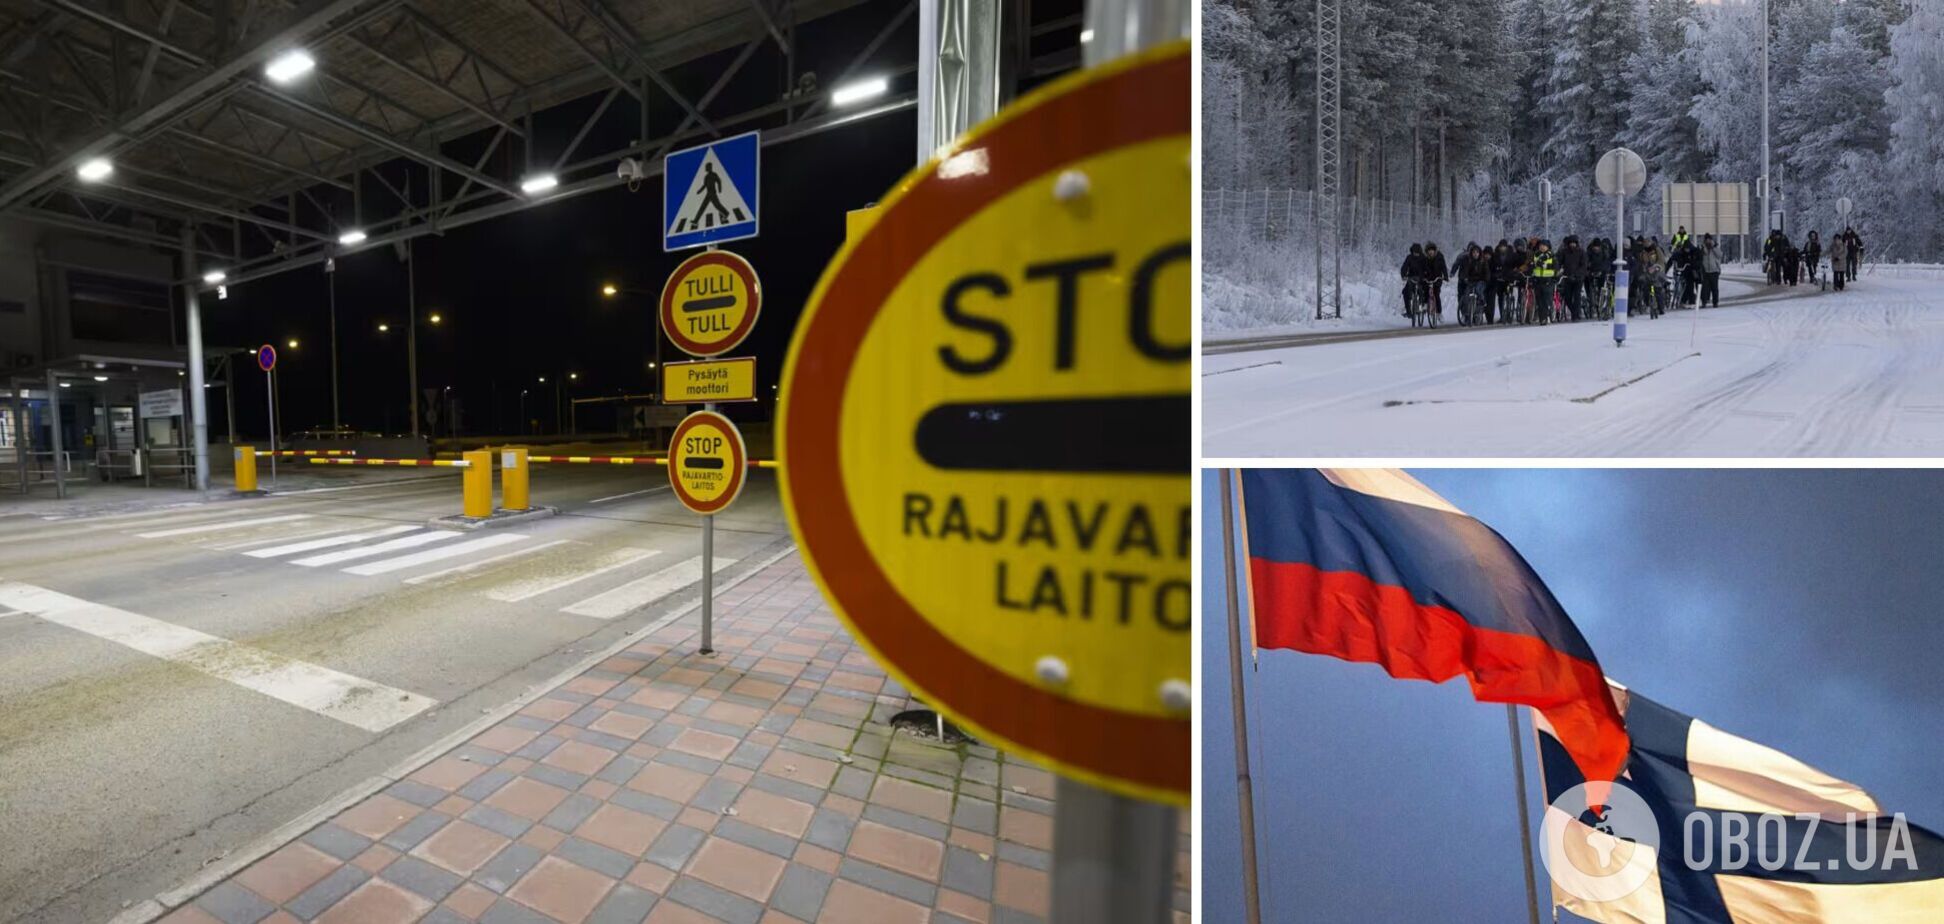 Попытка России создать миграционный кризис на границе Финляндии потерпела провал – ISW